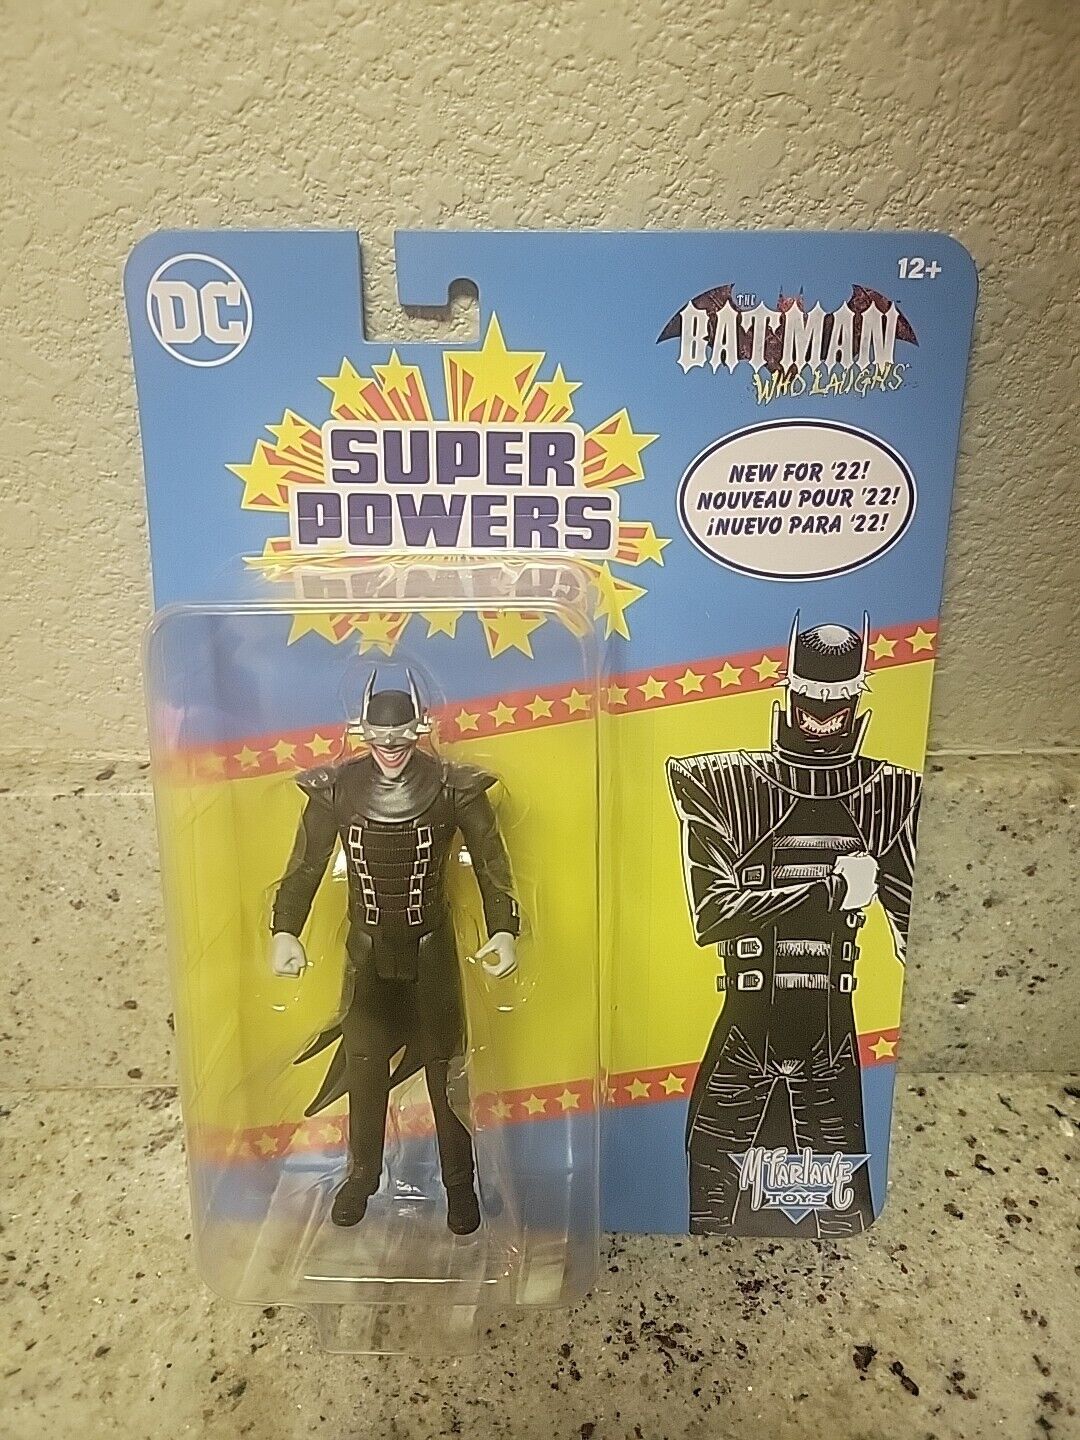 DC Super Powers 4 Inch Action Figure Wave 2 - The Batman Who Laughs